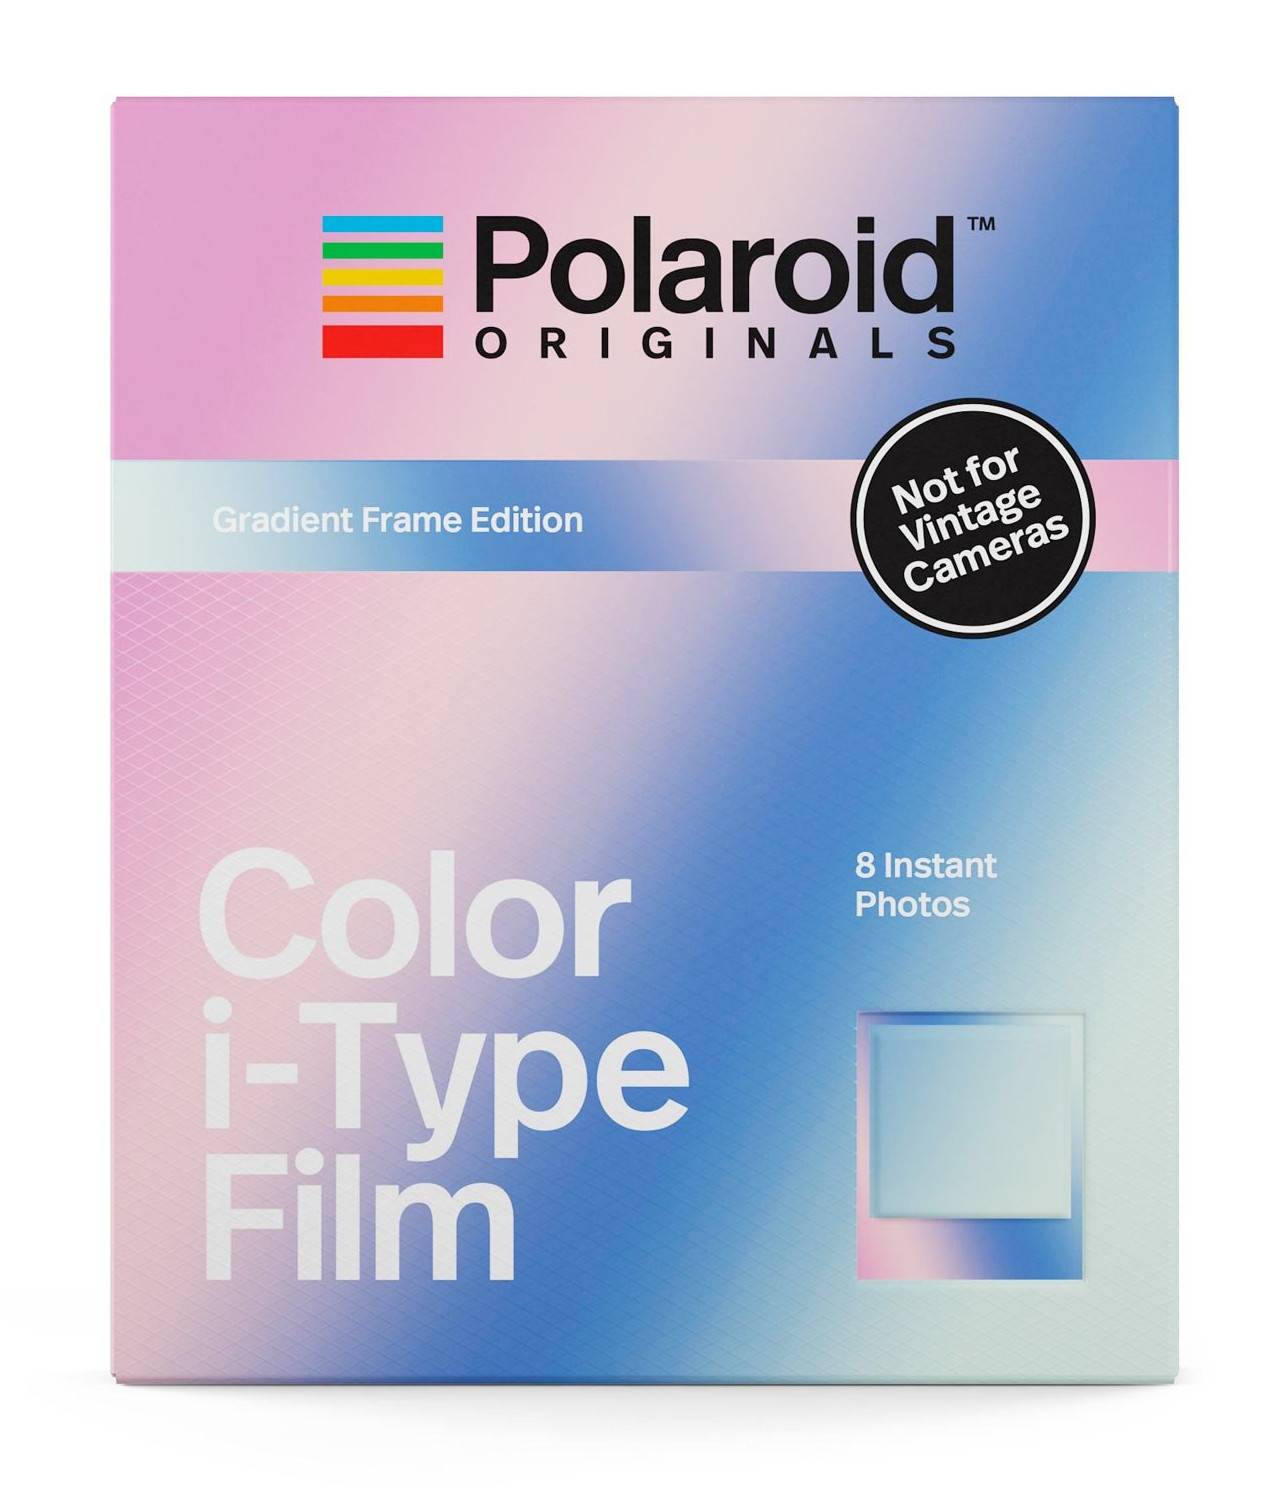 Polaroid Originals Gradient Edition Color Instant Film for i-Type Cameras (8 Exposures)